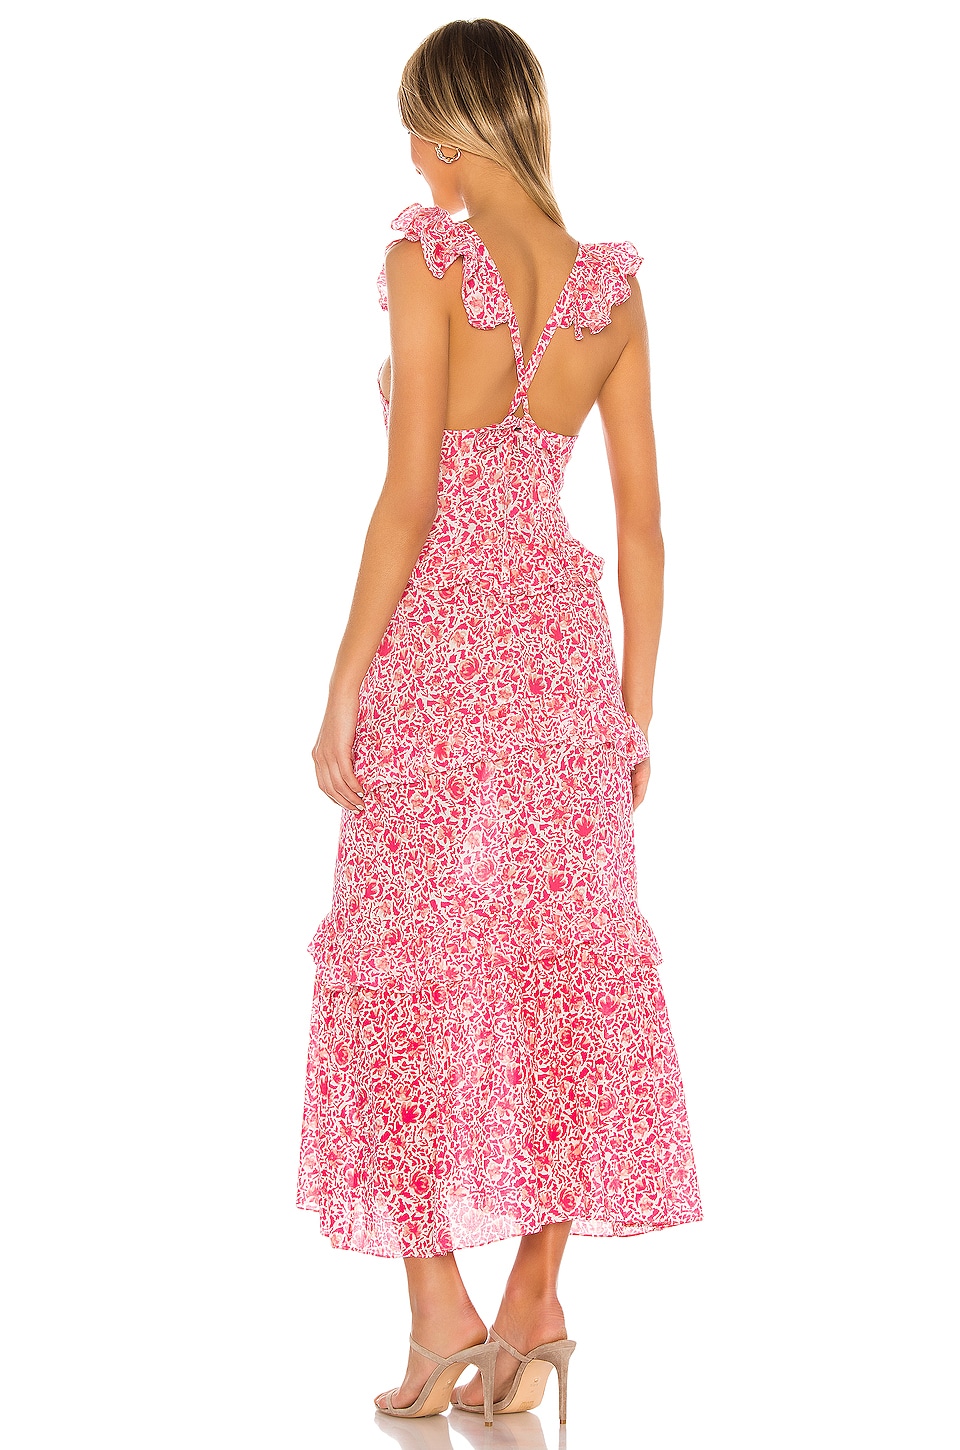 MISA Los Angeles Morrison Dress in Pink Animal Floral | REVOLVE